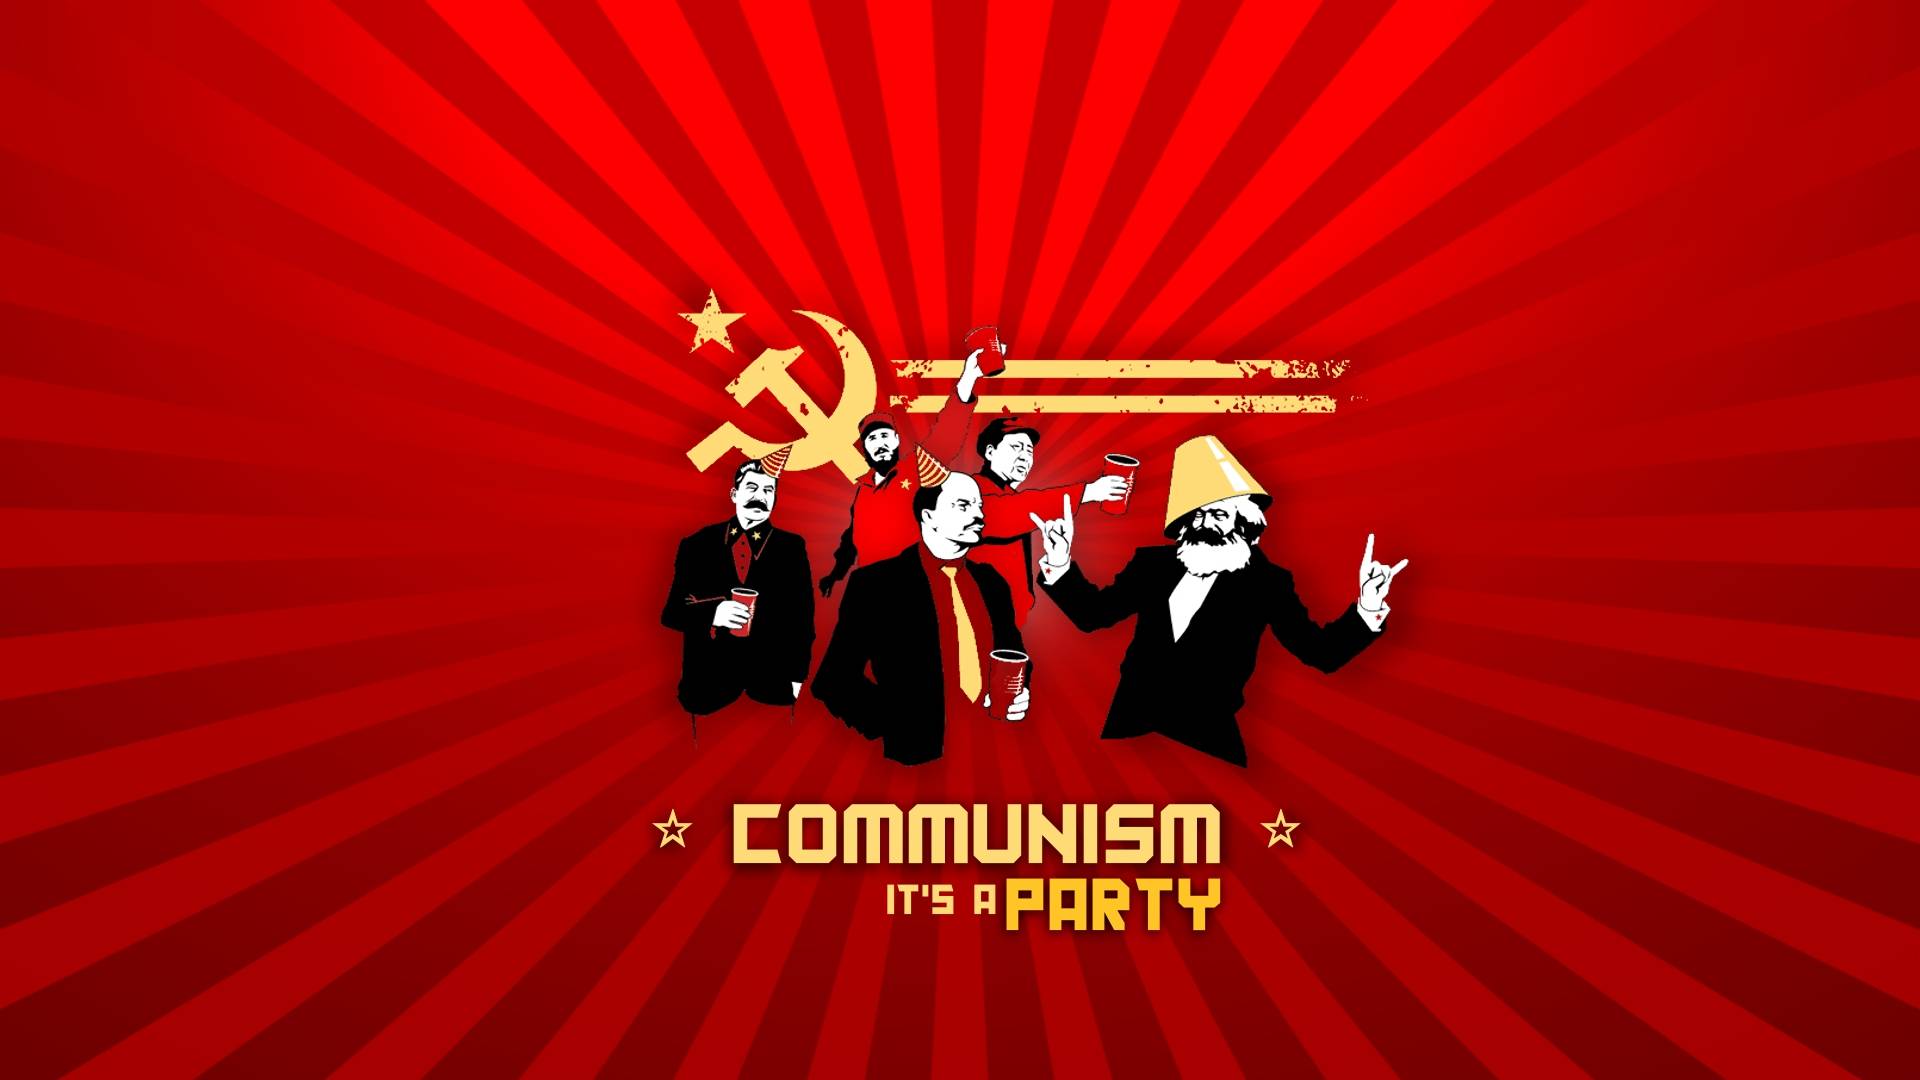 Communism Stalin 19201080 Wallpaper 878921 1920x1080